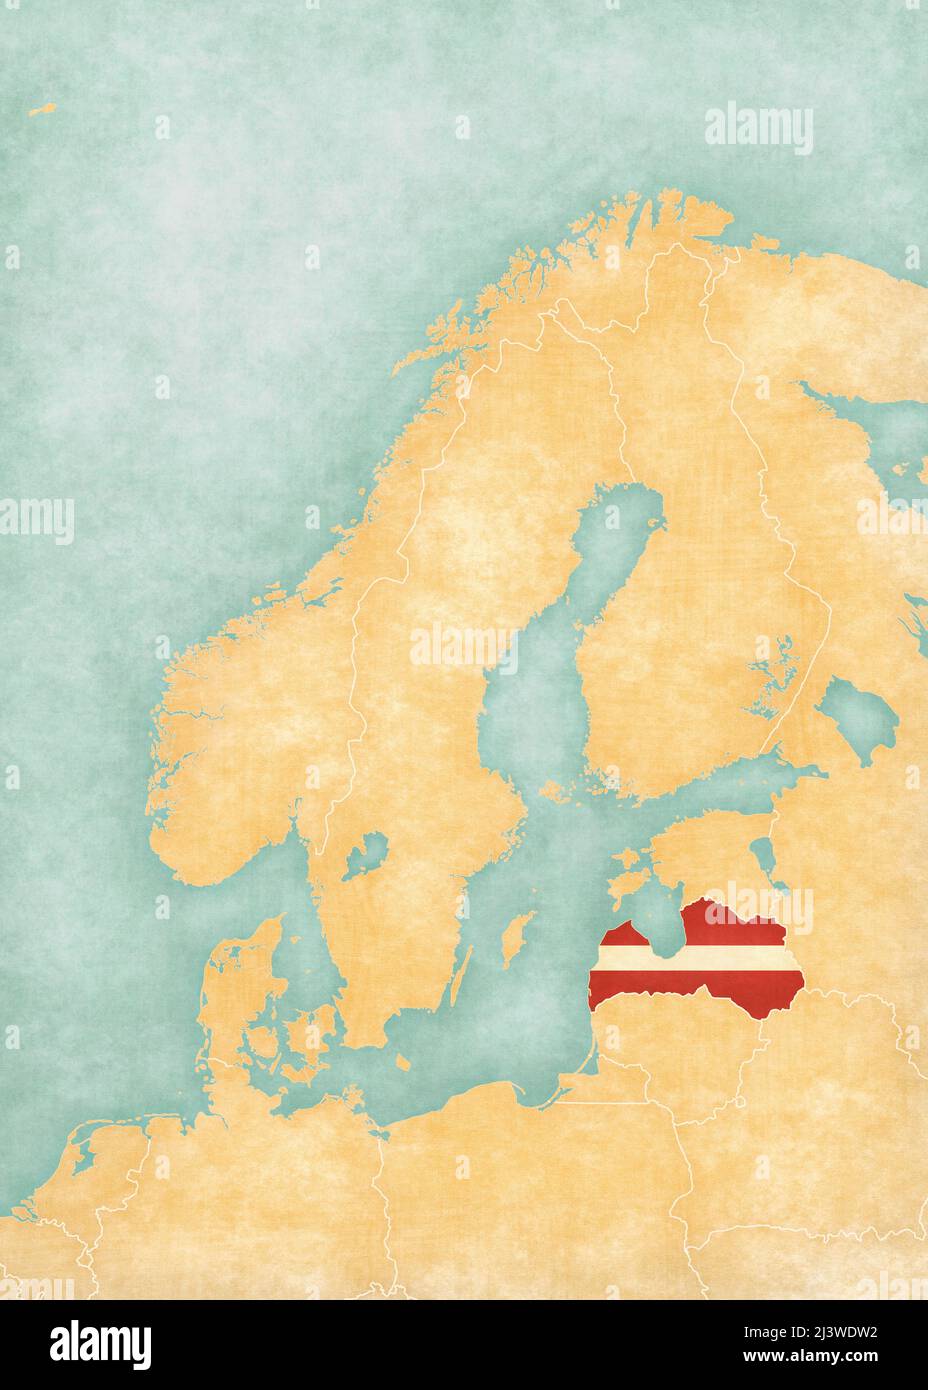 Lettonia (bandiera lettone) sulla mappa della Scandinavia. La mappa è in morbido grunge e vintage stile, come la pittura acquerello su carta vecchia. Foto Stock